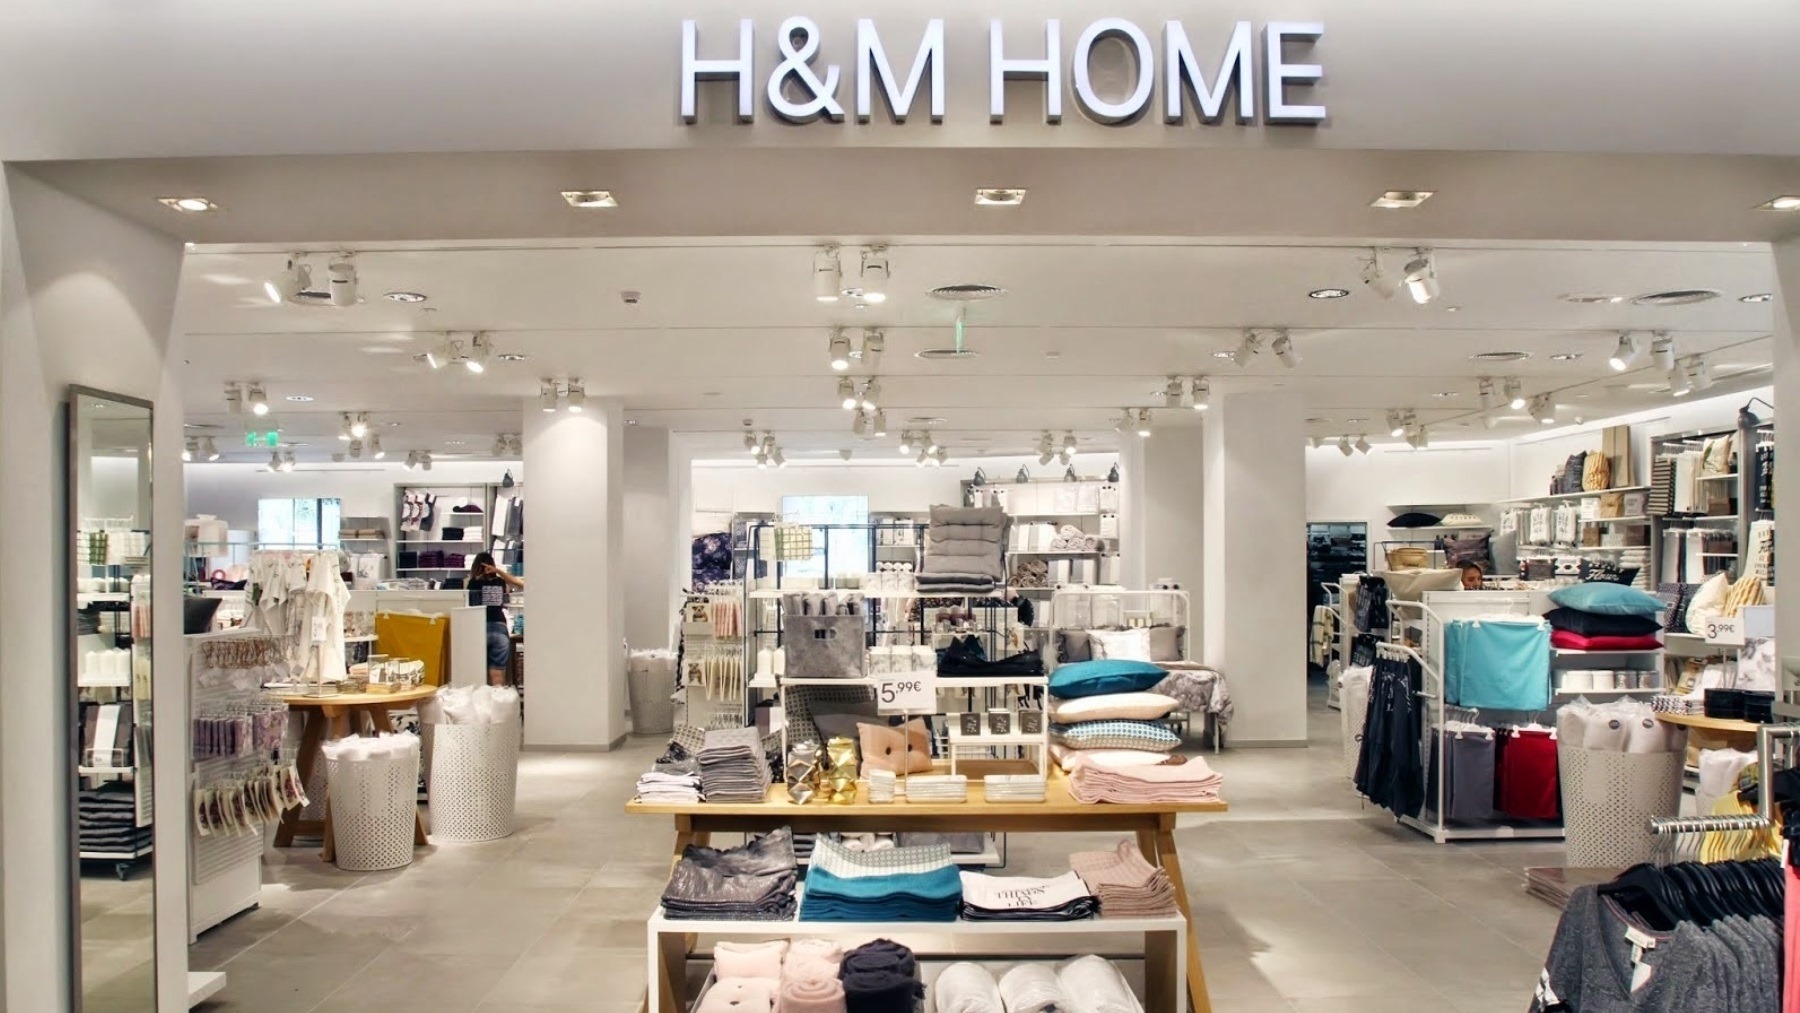 Se infla grupo Galantería H&M Home tiene el producto más buscado en Zara Home y por menos de 10 euros